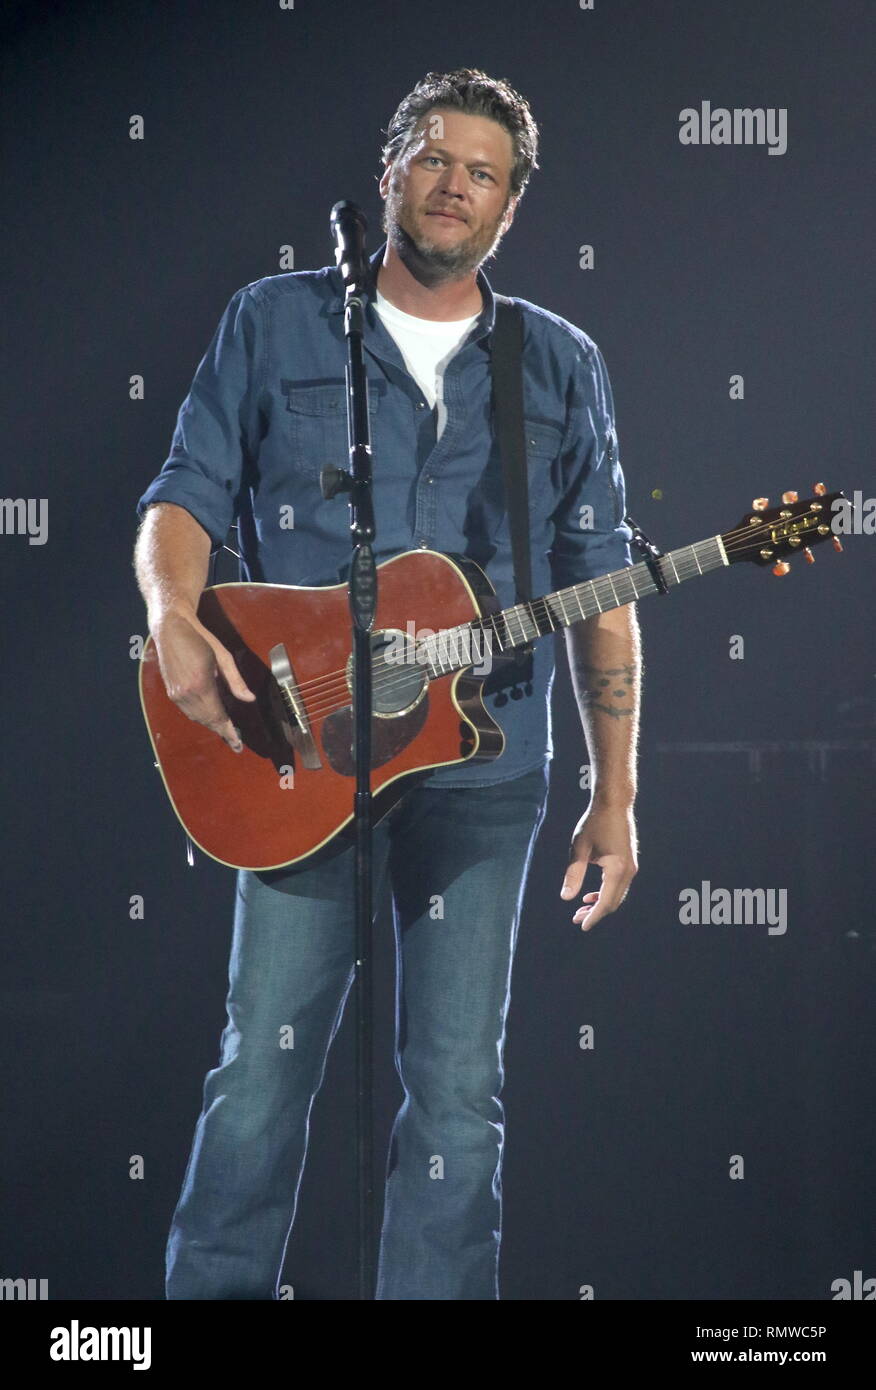 Músico Blake Shelton está demostrado actuar en el escenario durante un concierto 'live' apariencia. Foto de stock